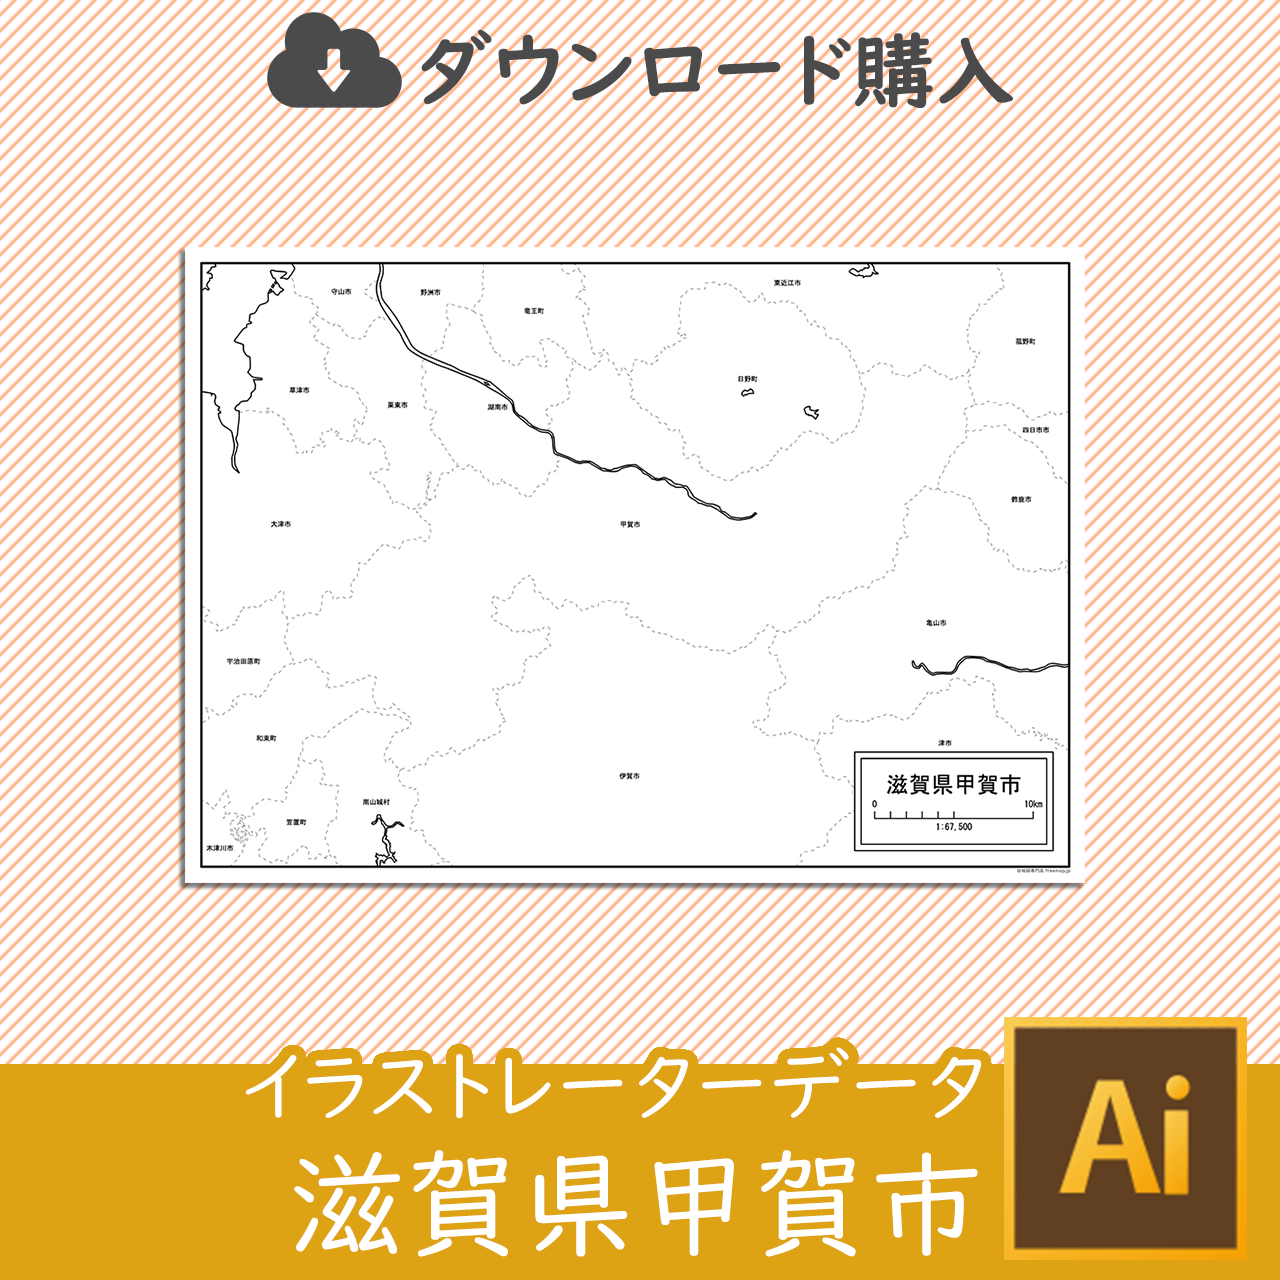 甲賀市のaiデータのサムネイル画像